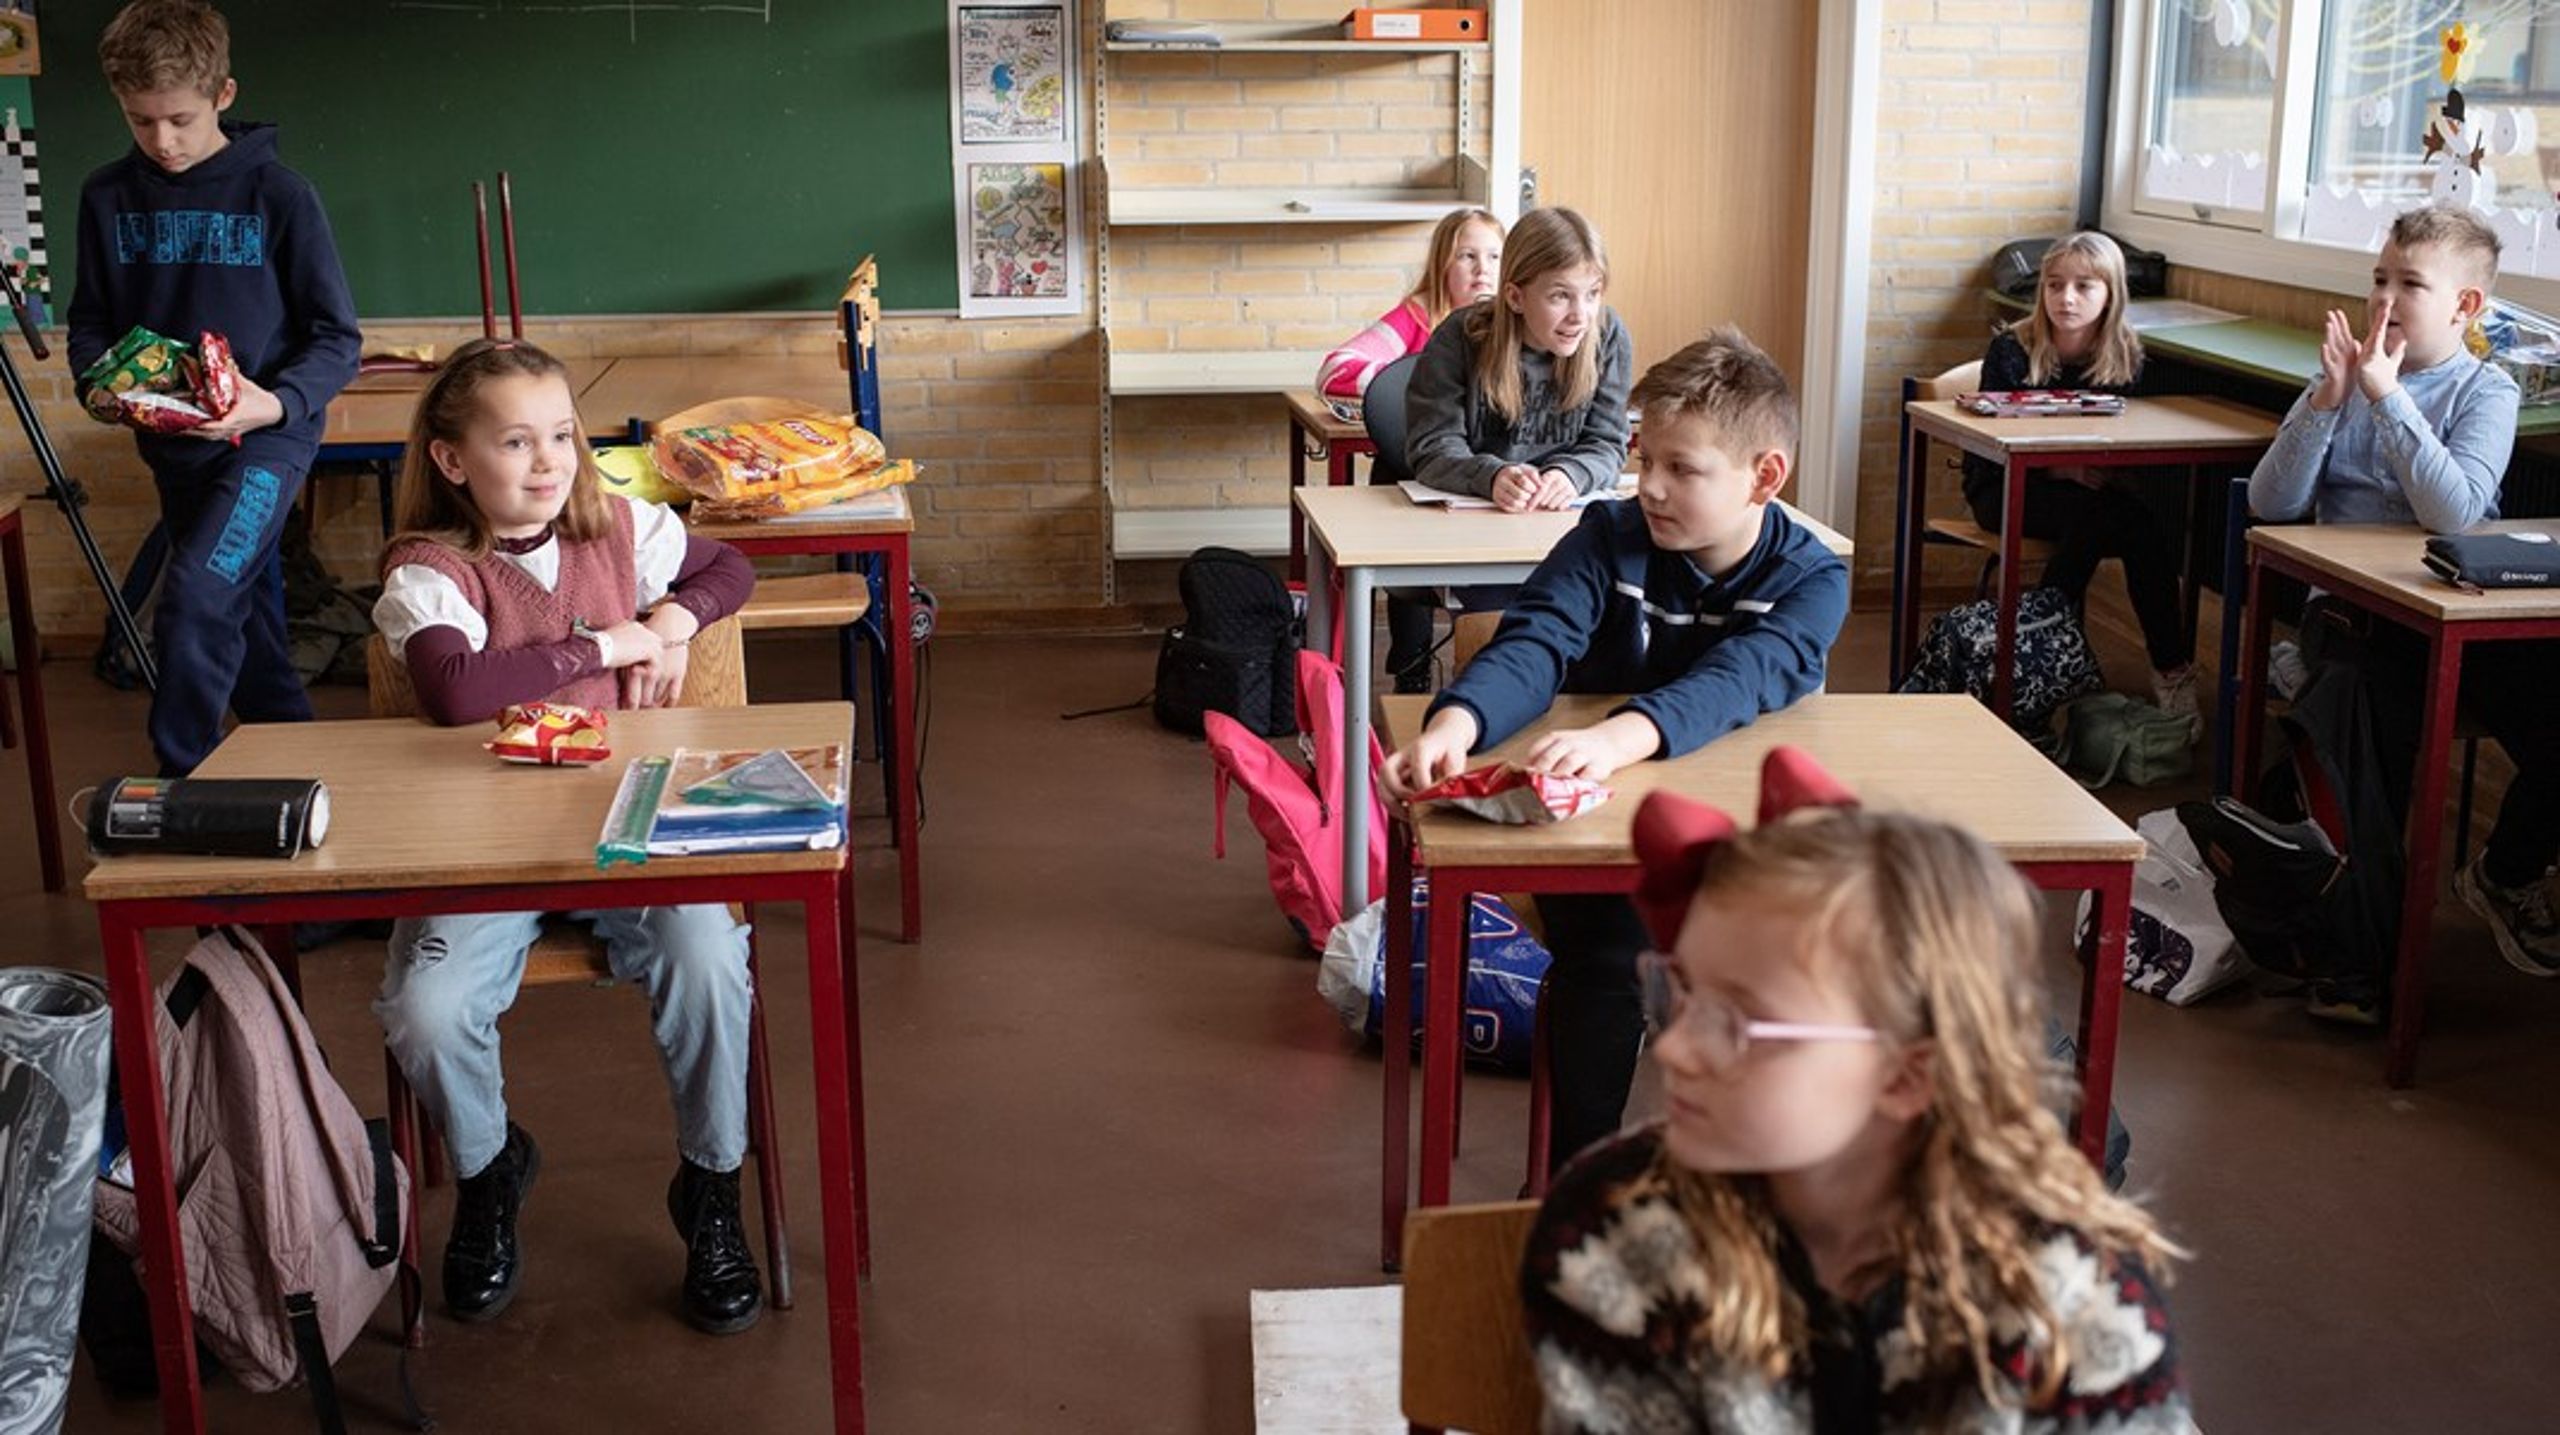 Elever i klasselokaler med dårligt indeklima risikerer at miste indlæring svarende til op mod ét helt års skolegang. Det kan vi ikke være tilfredse med, skriver fire kandidater til Københavns Borgerrepræsentation.